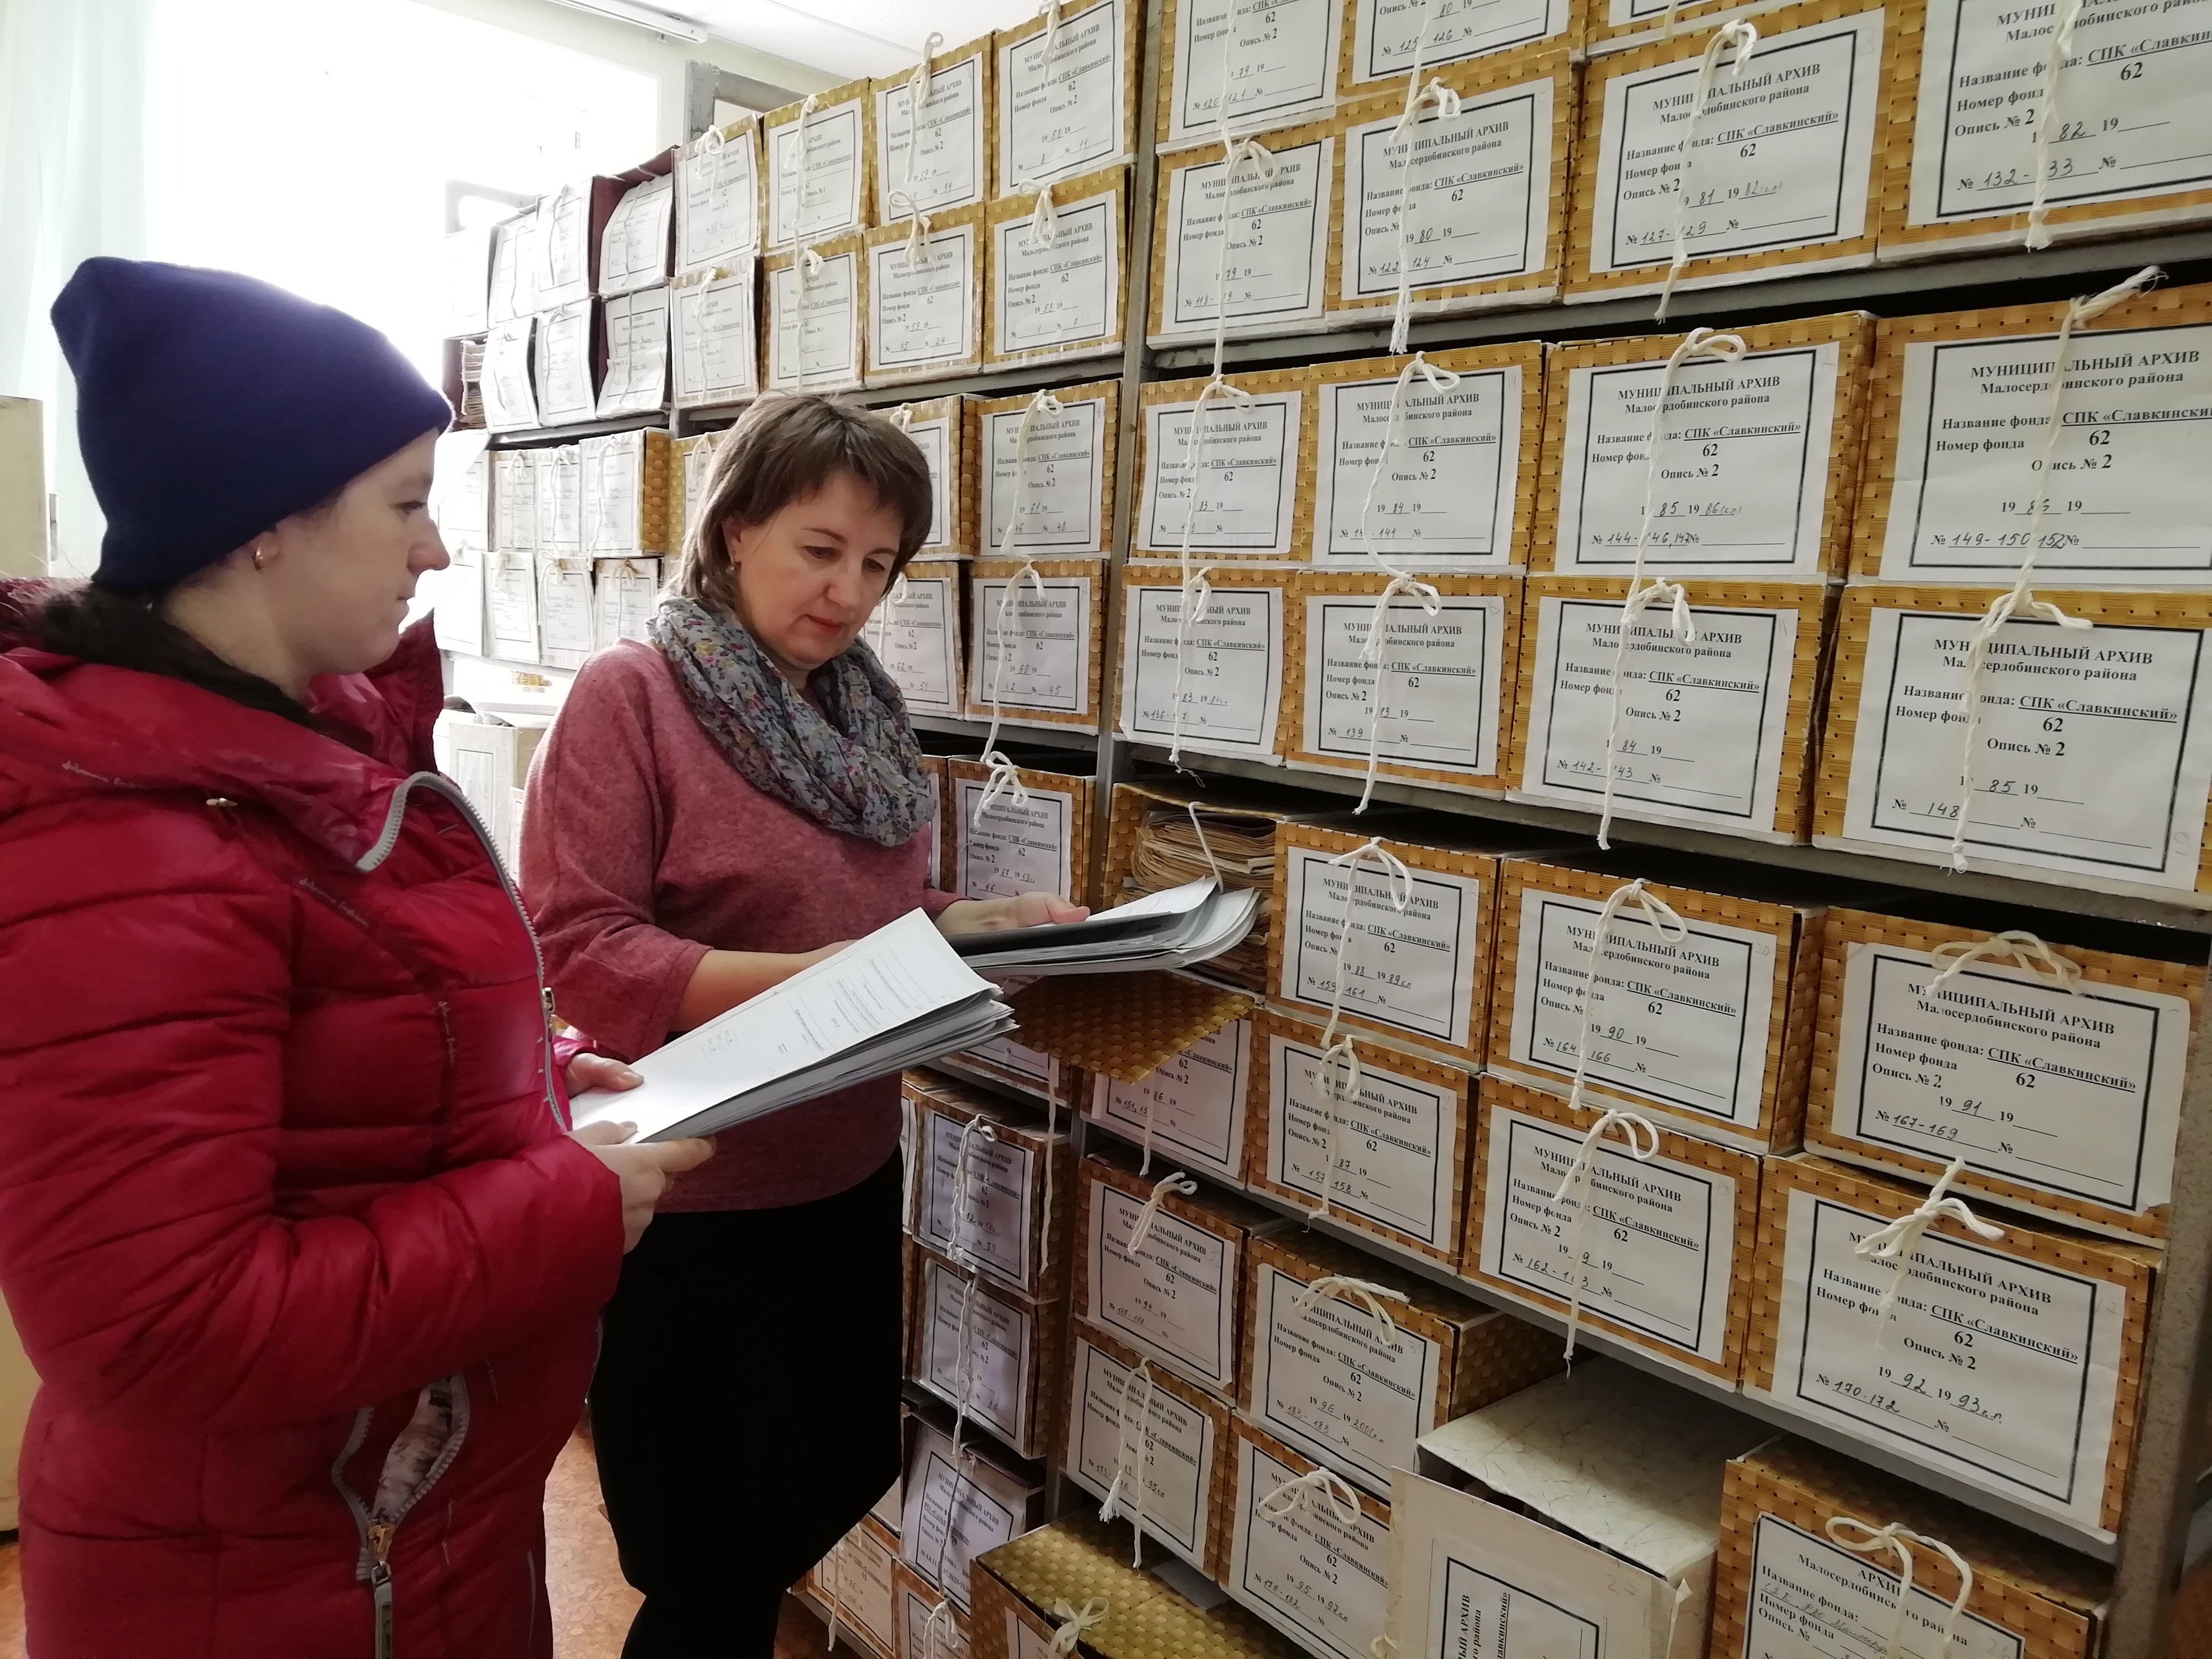 Комплектование архива электронными документами